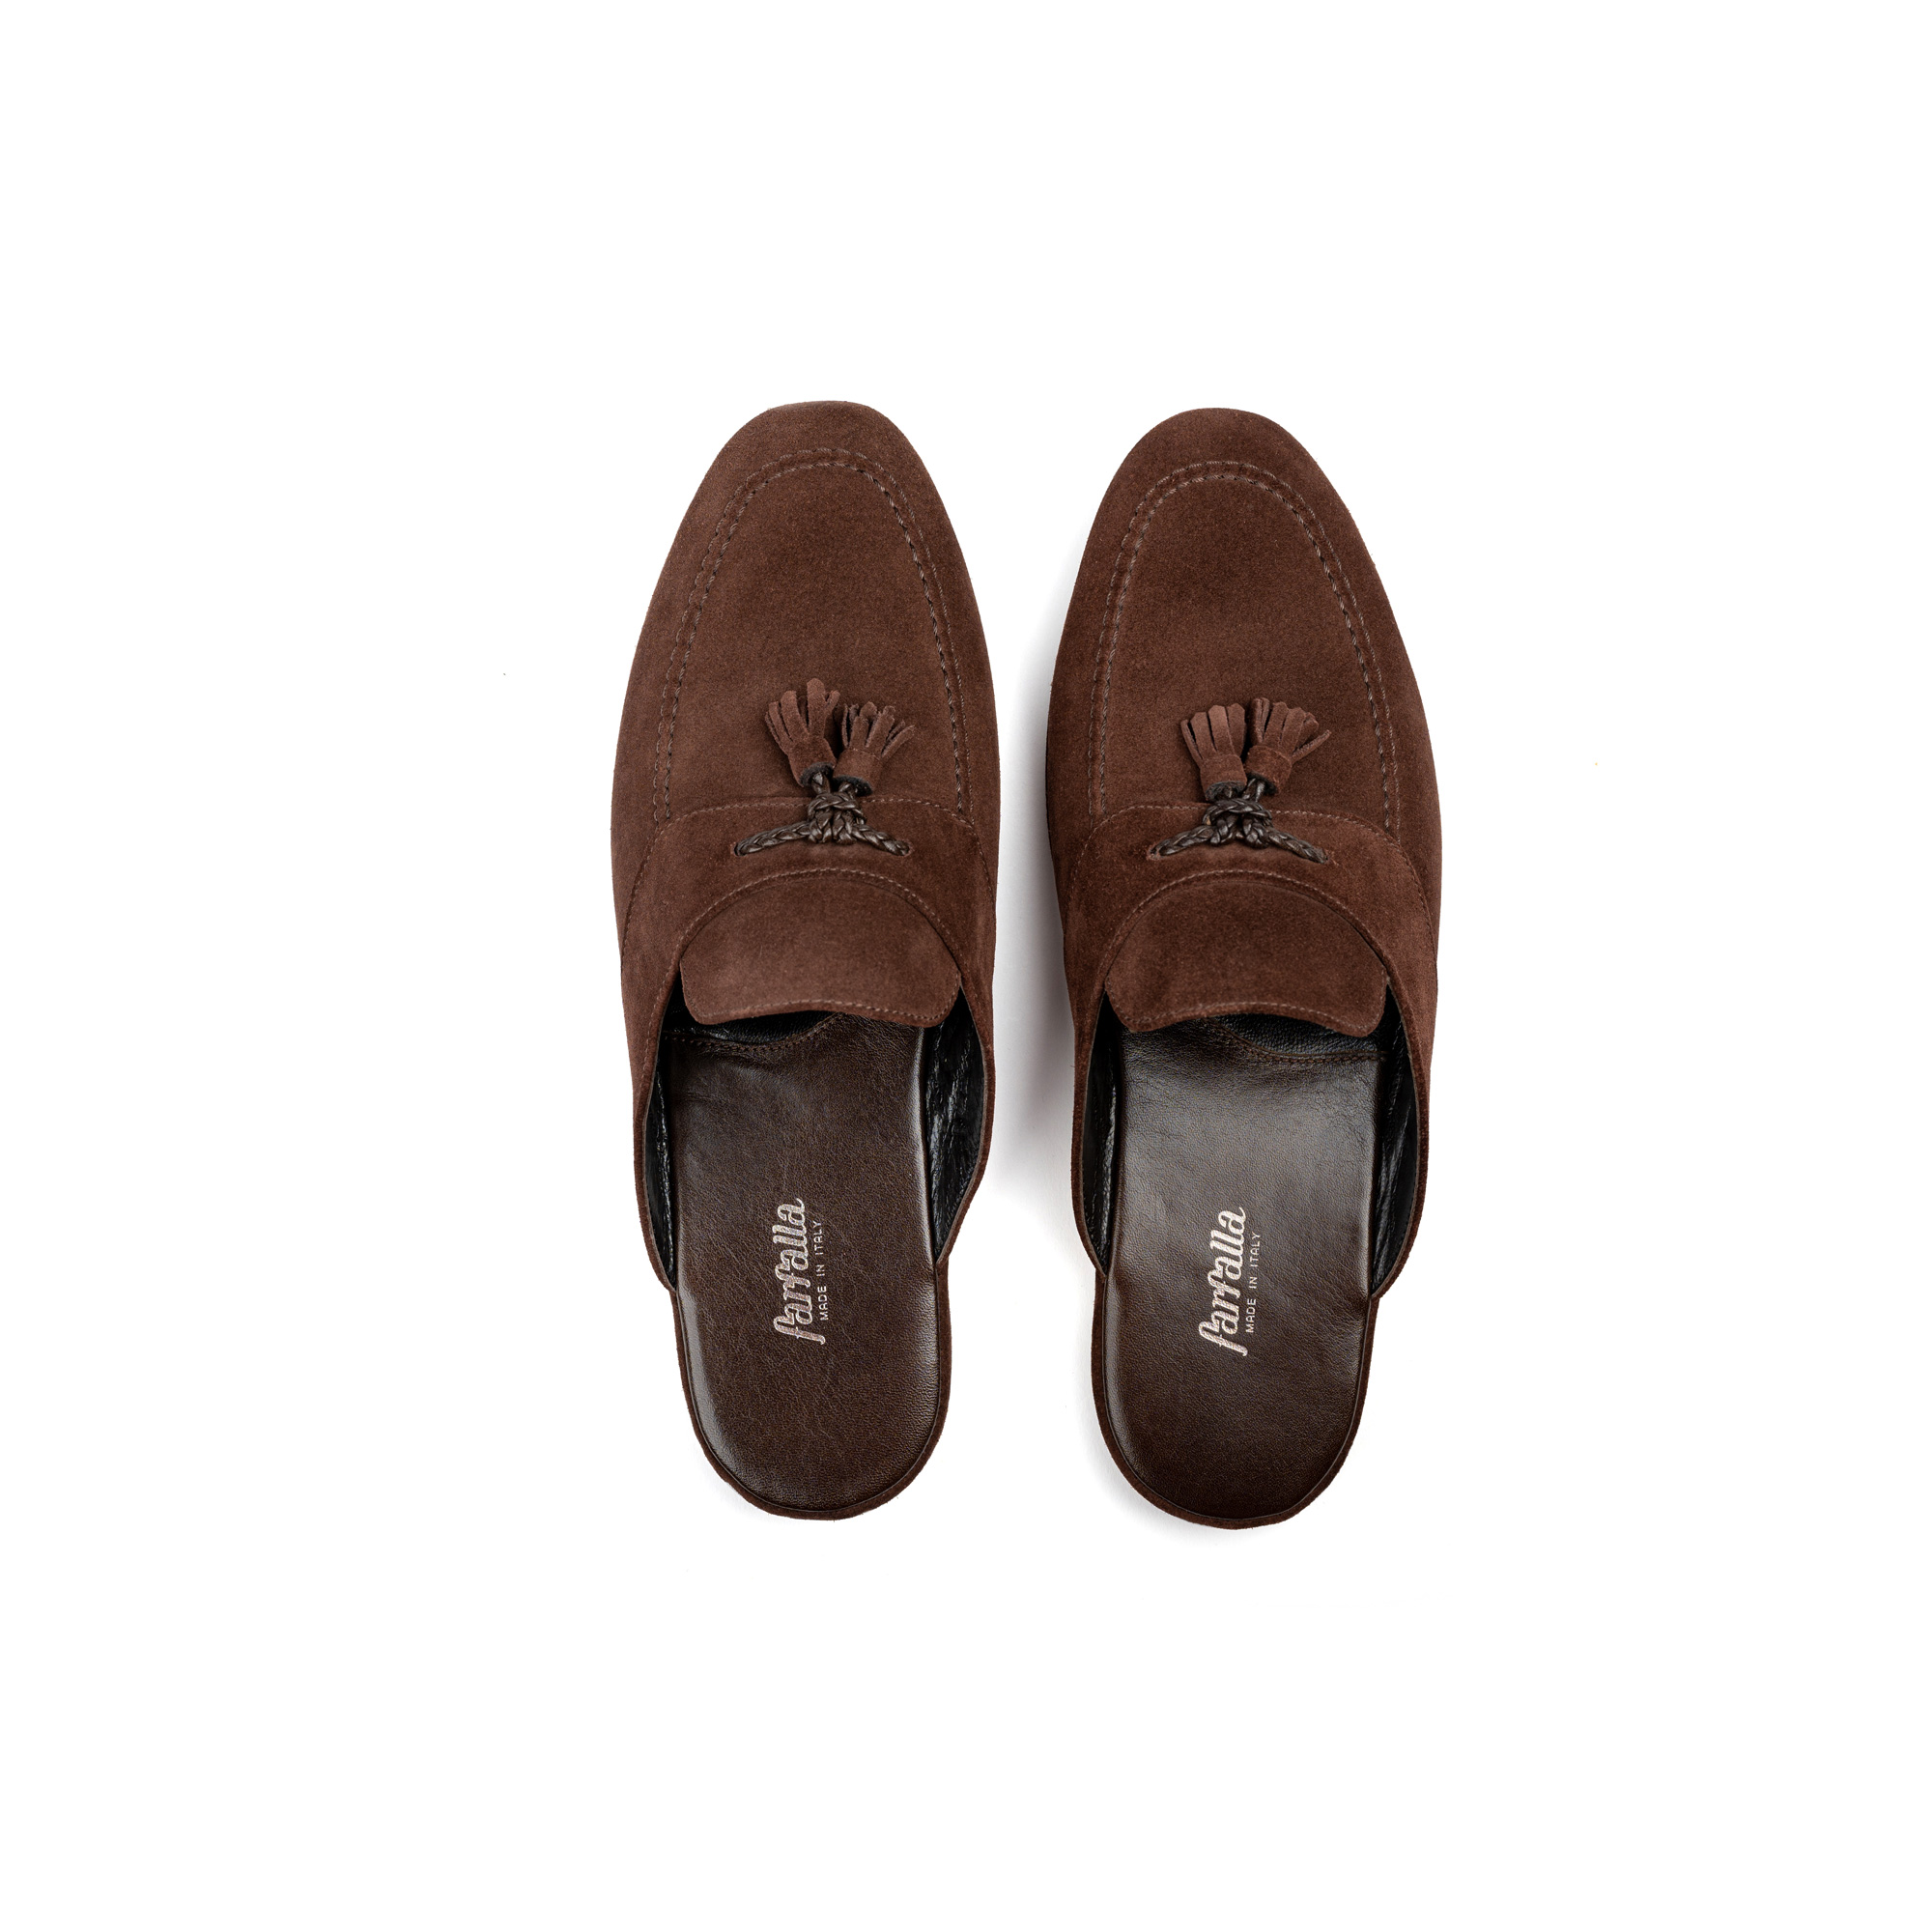 Pantofola interno classico in velour niger - Farfalla italian slippers